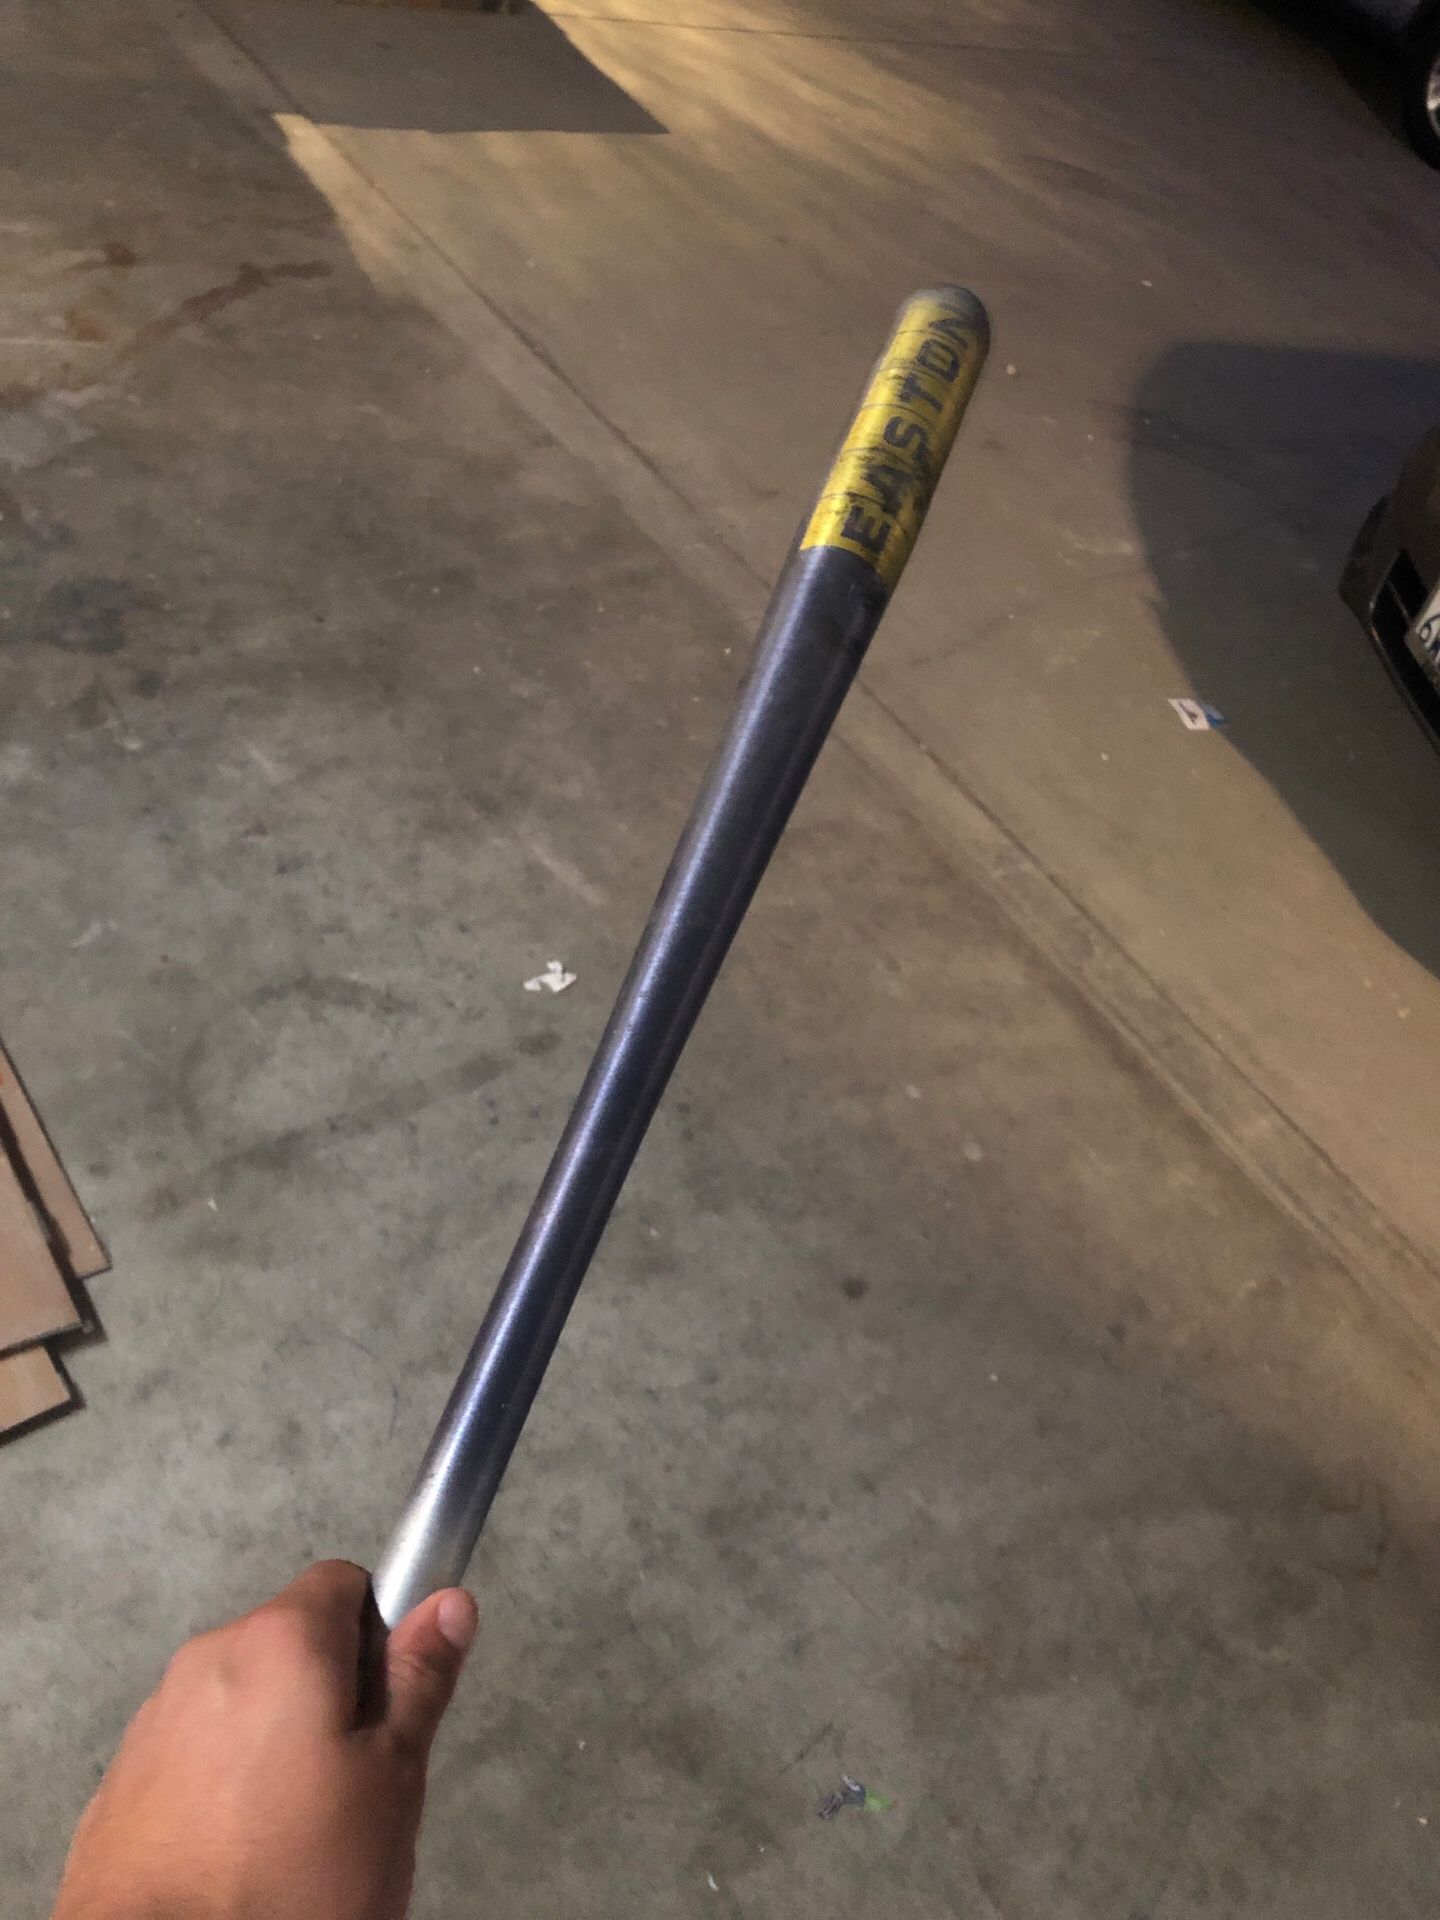 Easton Smoke baseball bat